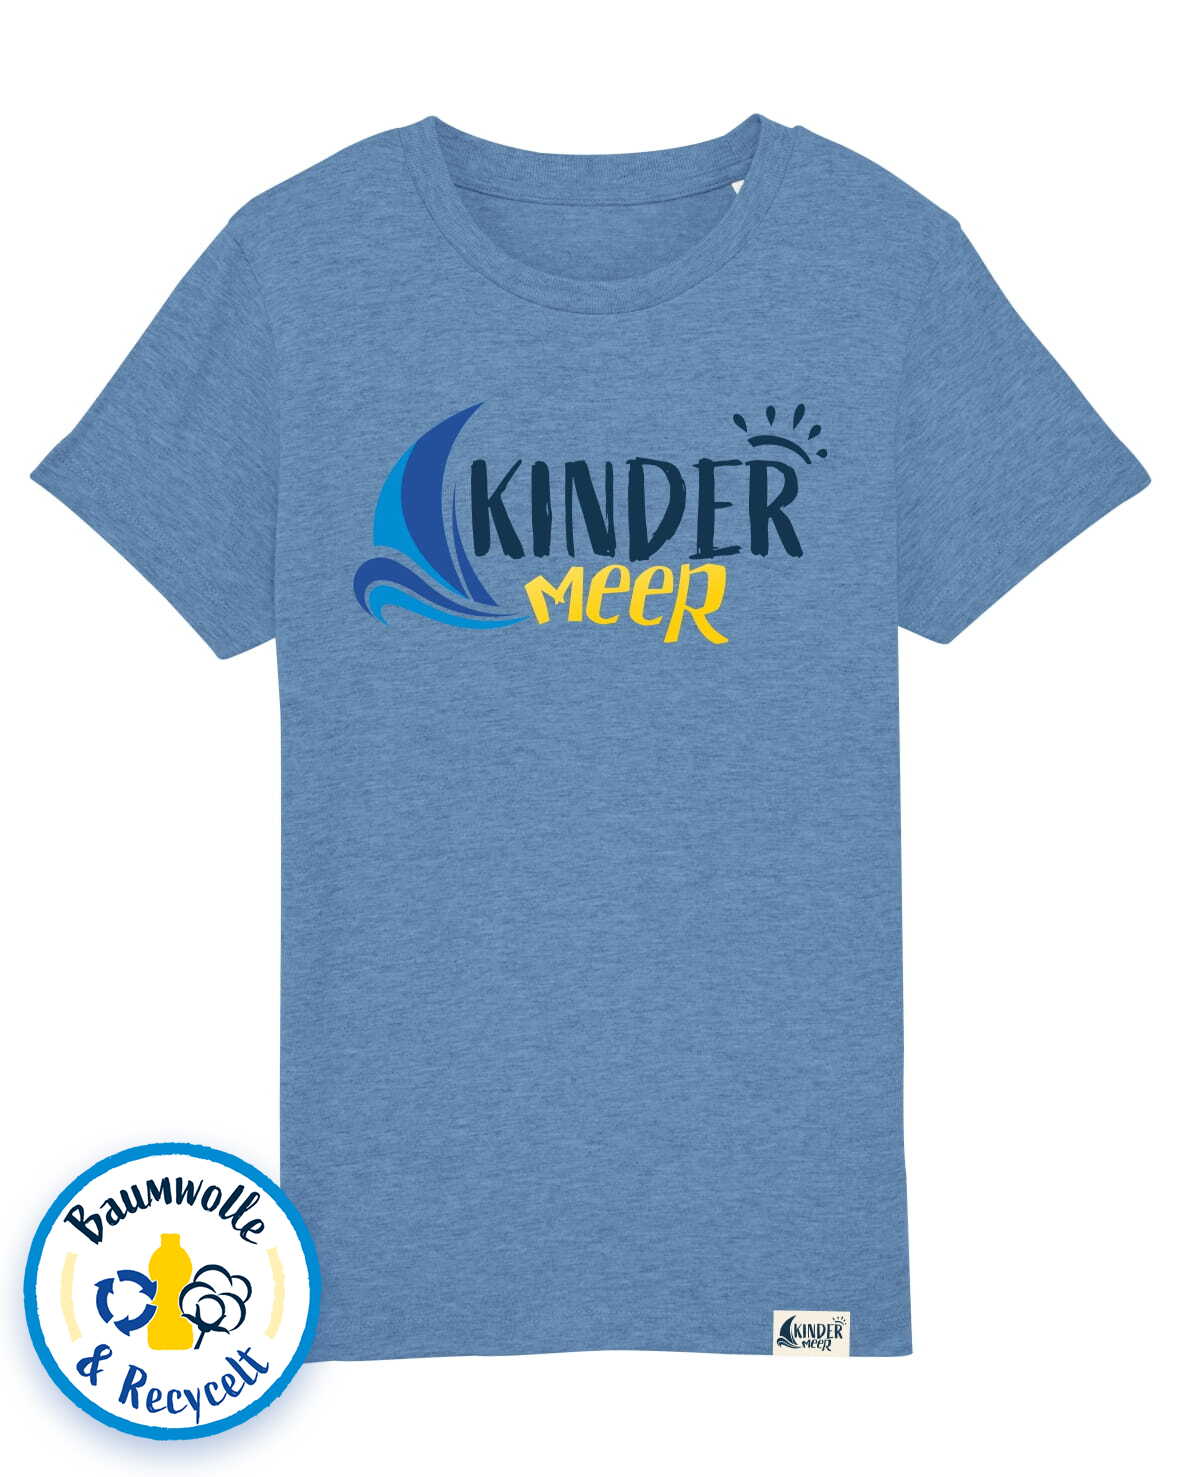 kindermeer-t-shirt-mid-blue